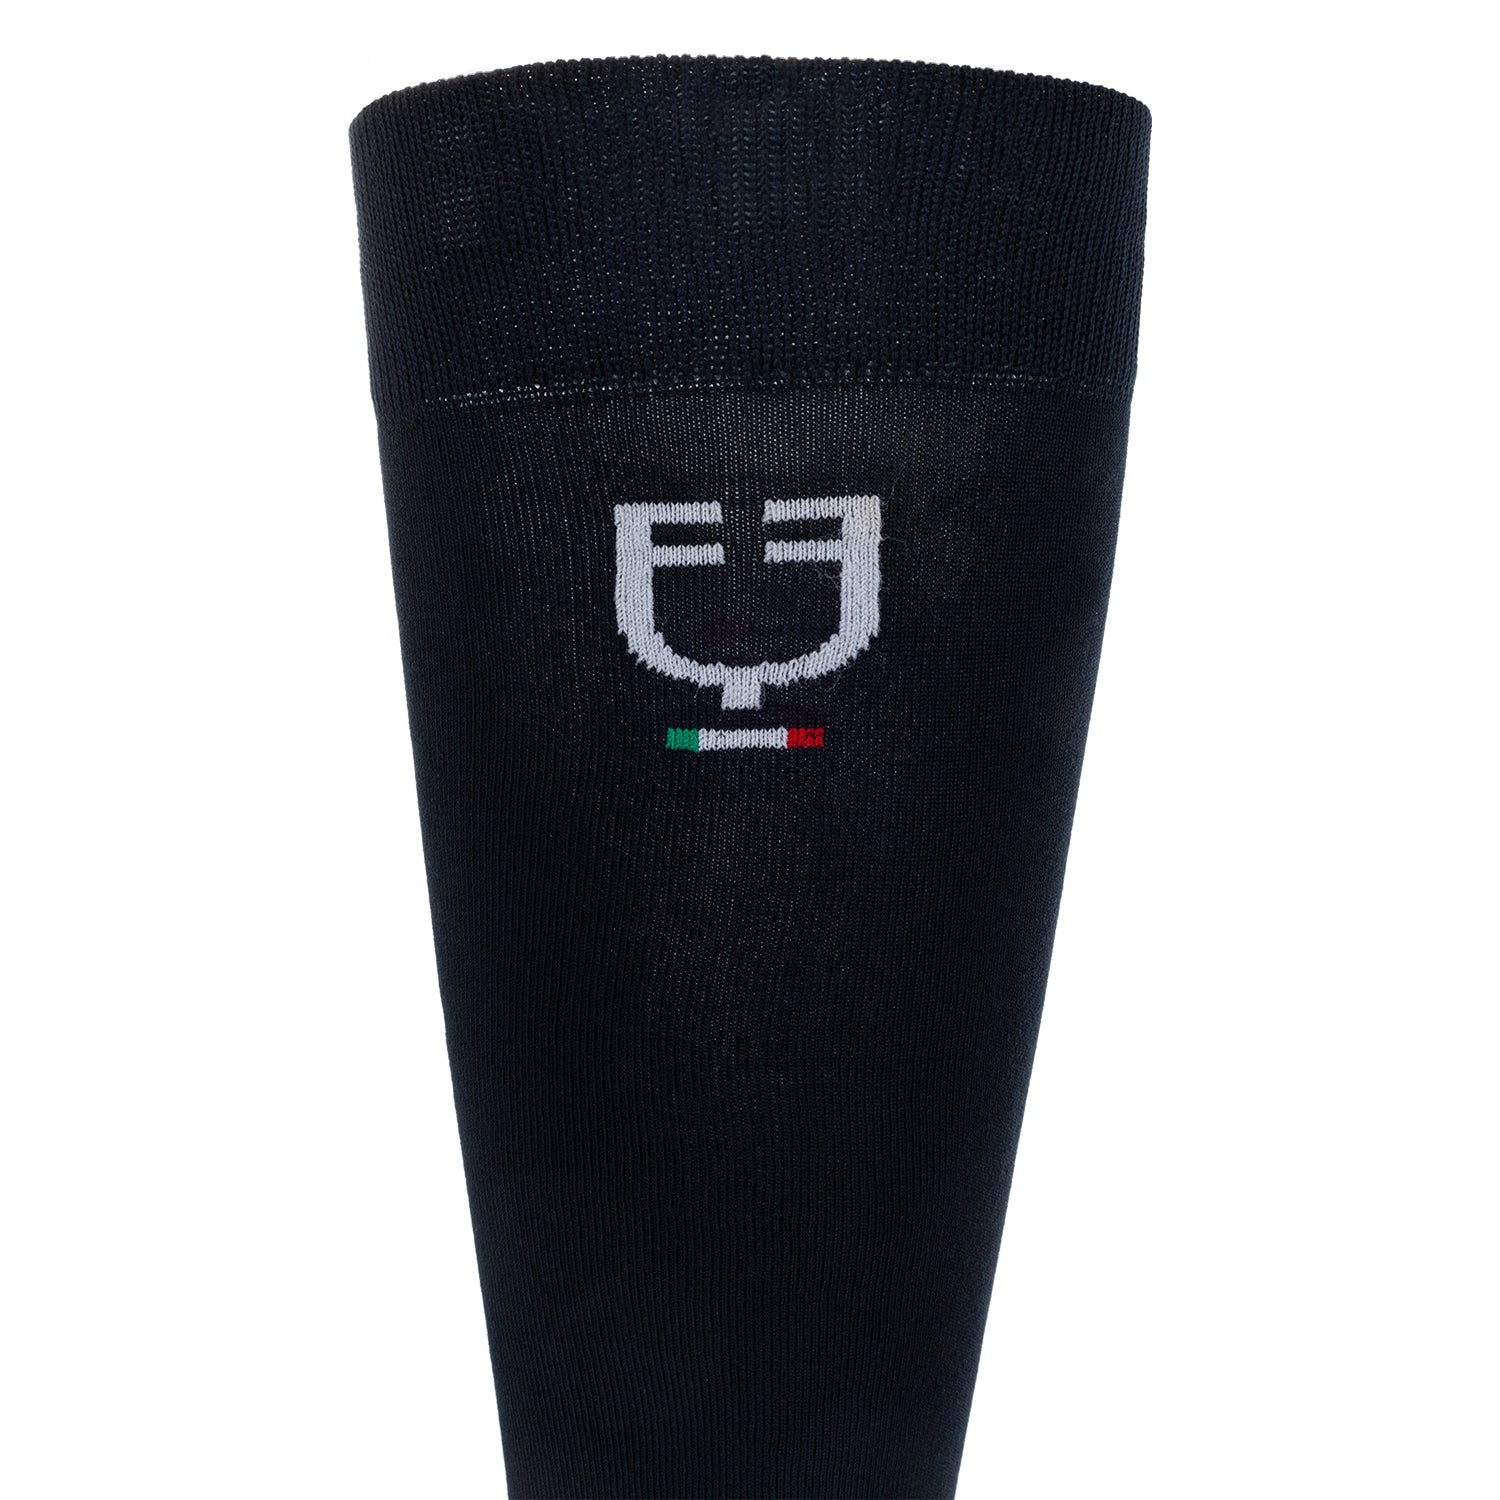 Calze in tessuto tecnico elasticizzato traspirante con logo bandiera italiana